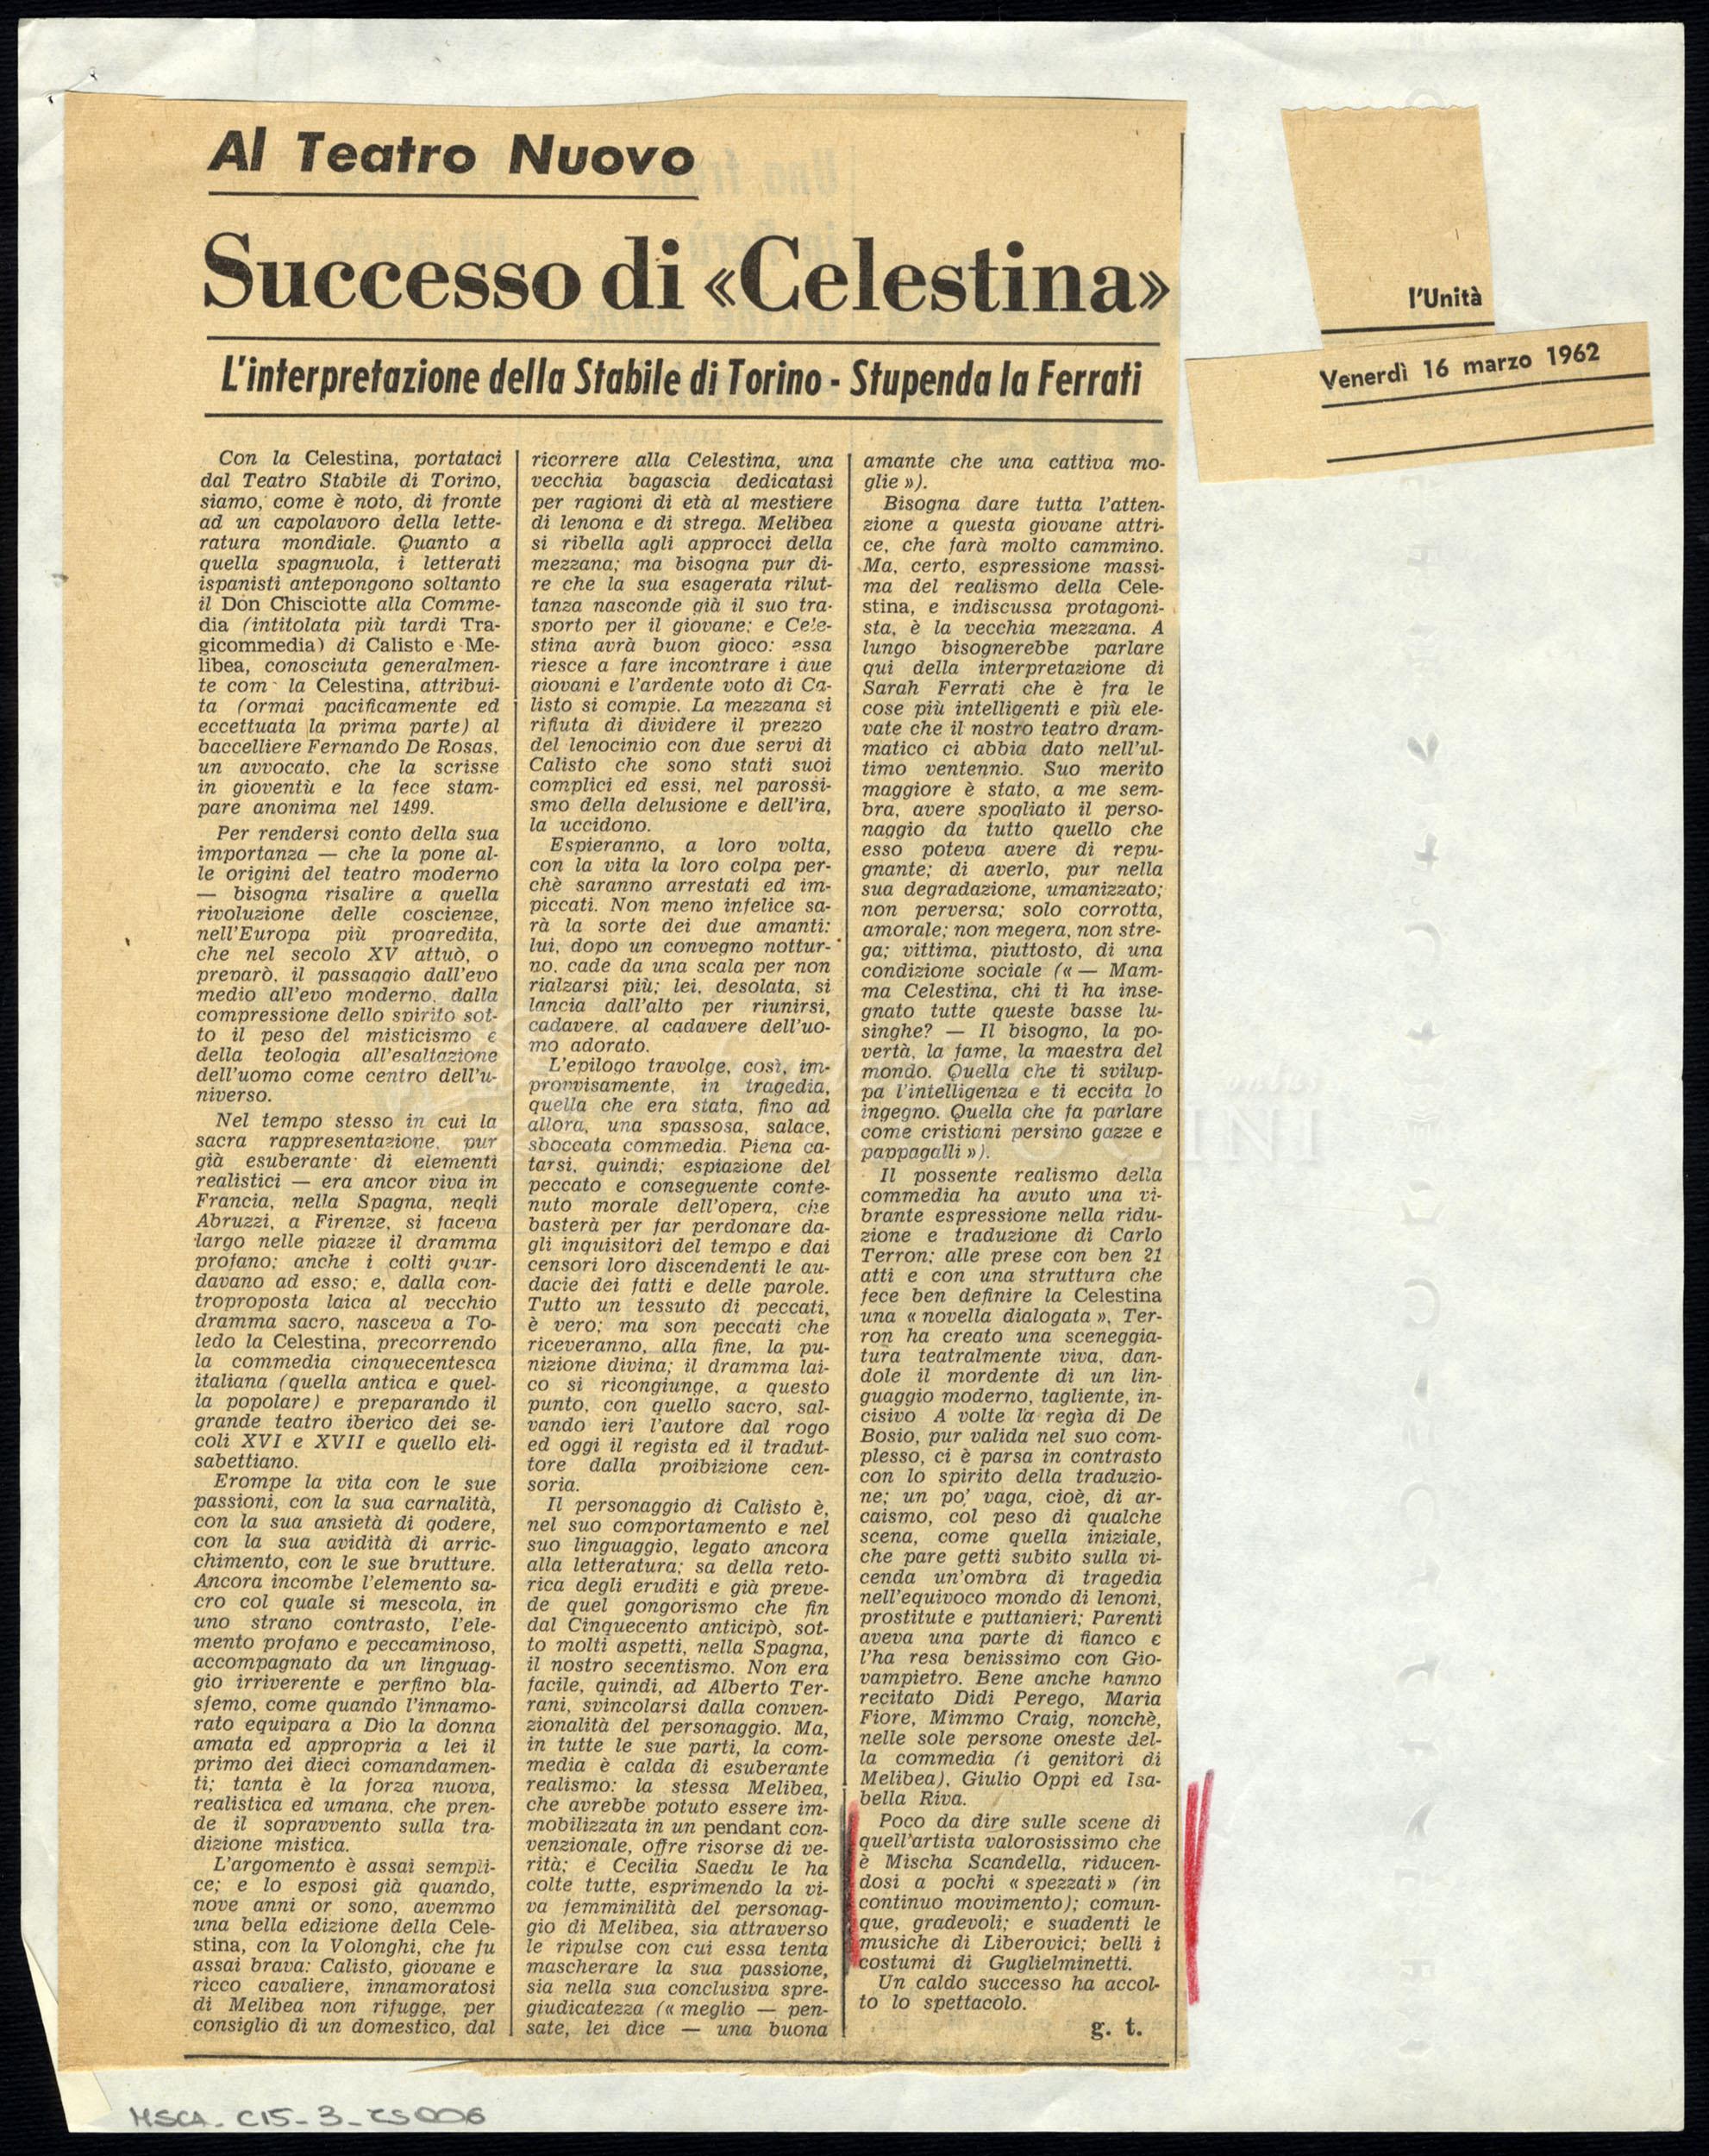 Successo di «Celestina»
				 : Al Teatro Nuovo 16 marzo 1962